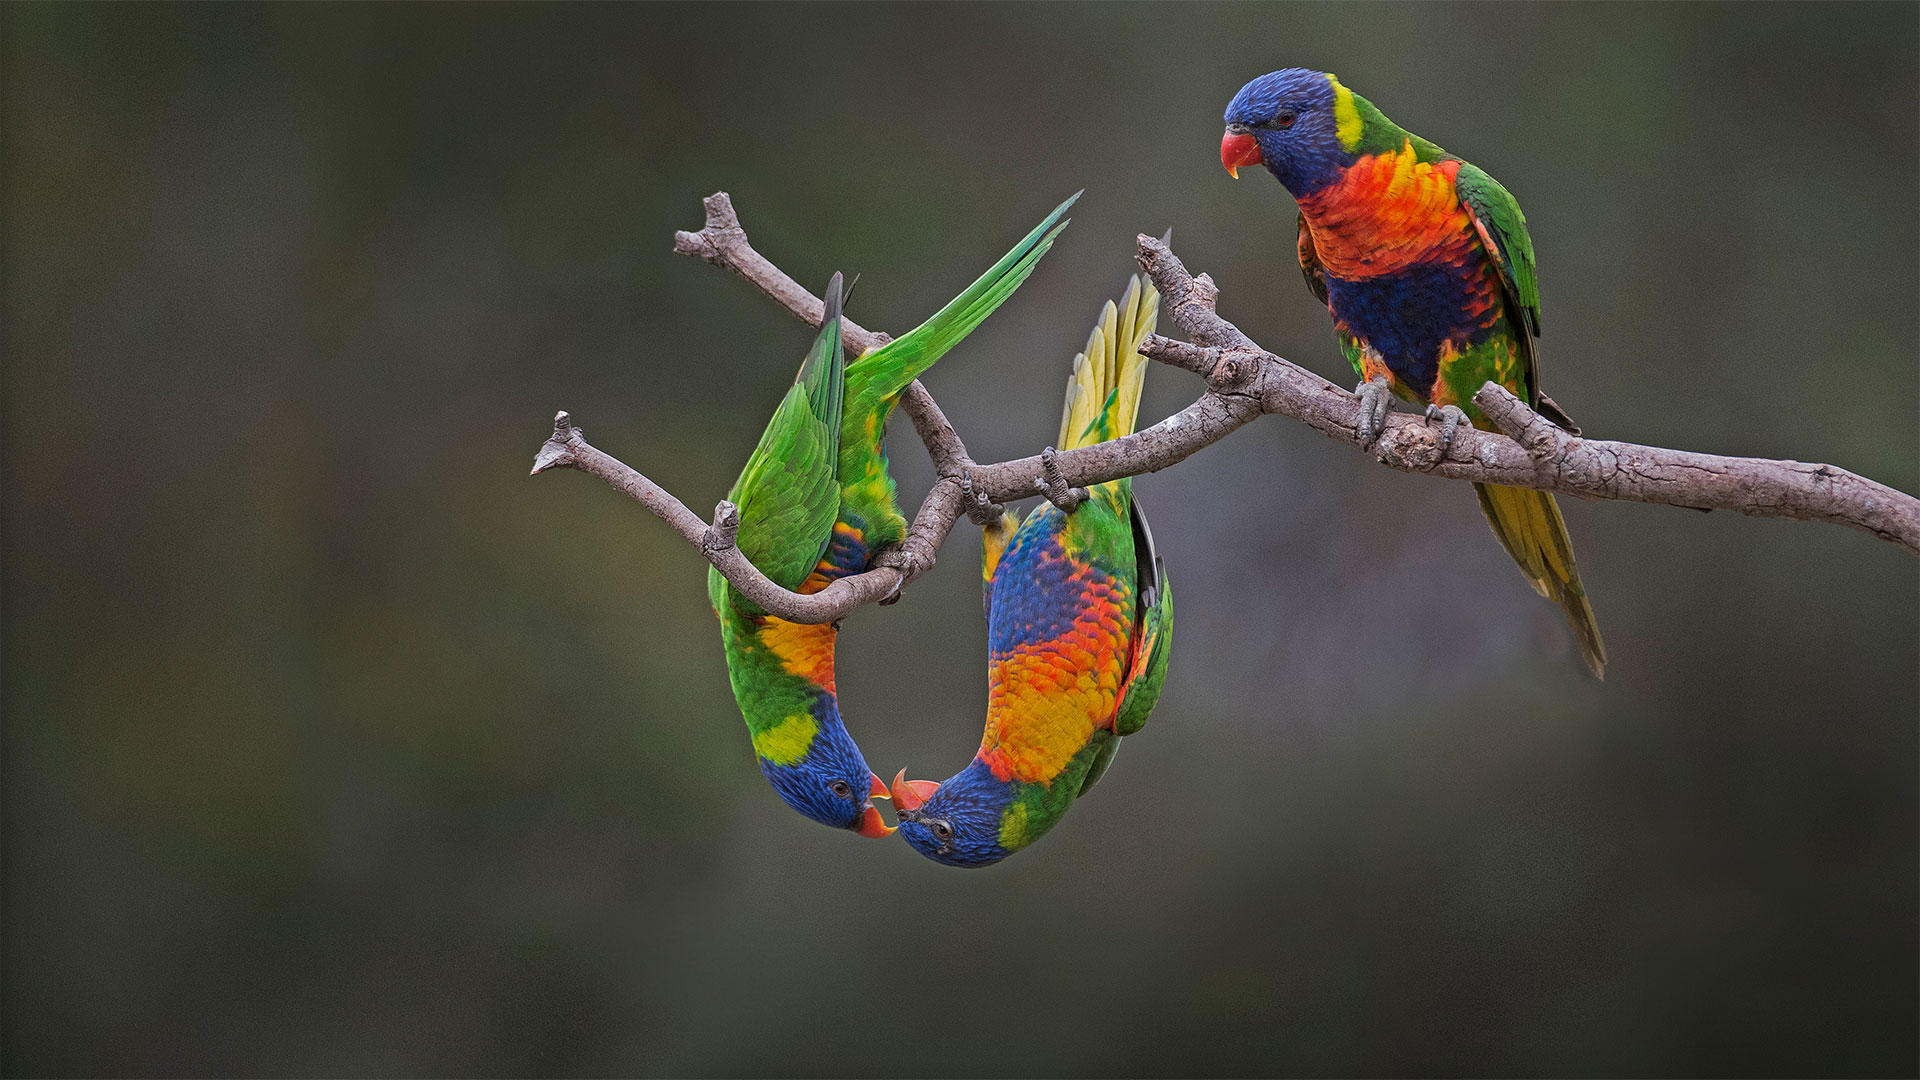 Wallpapers Rainbow lorikeet parrot bird on the desktop